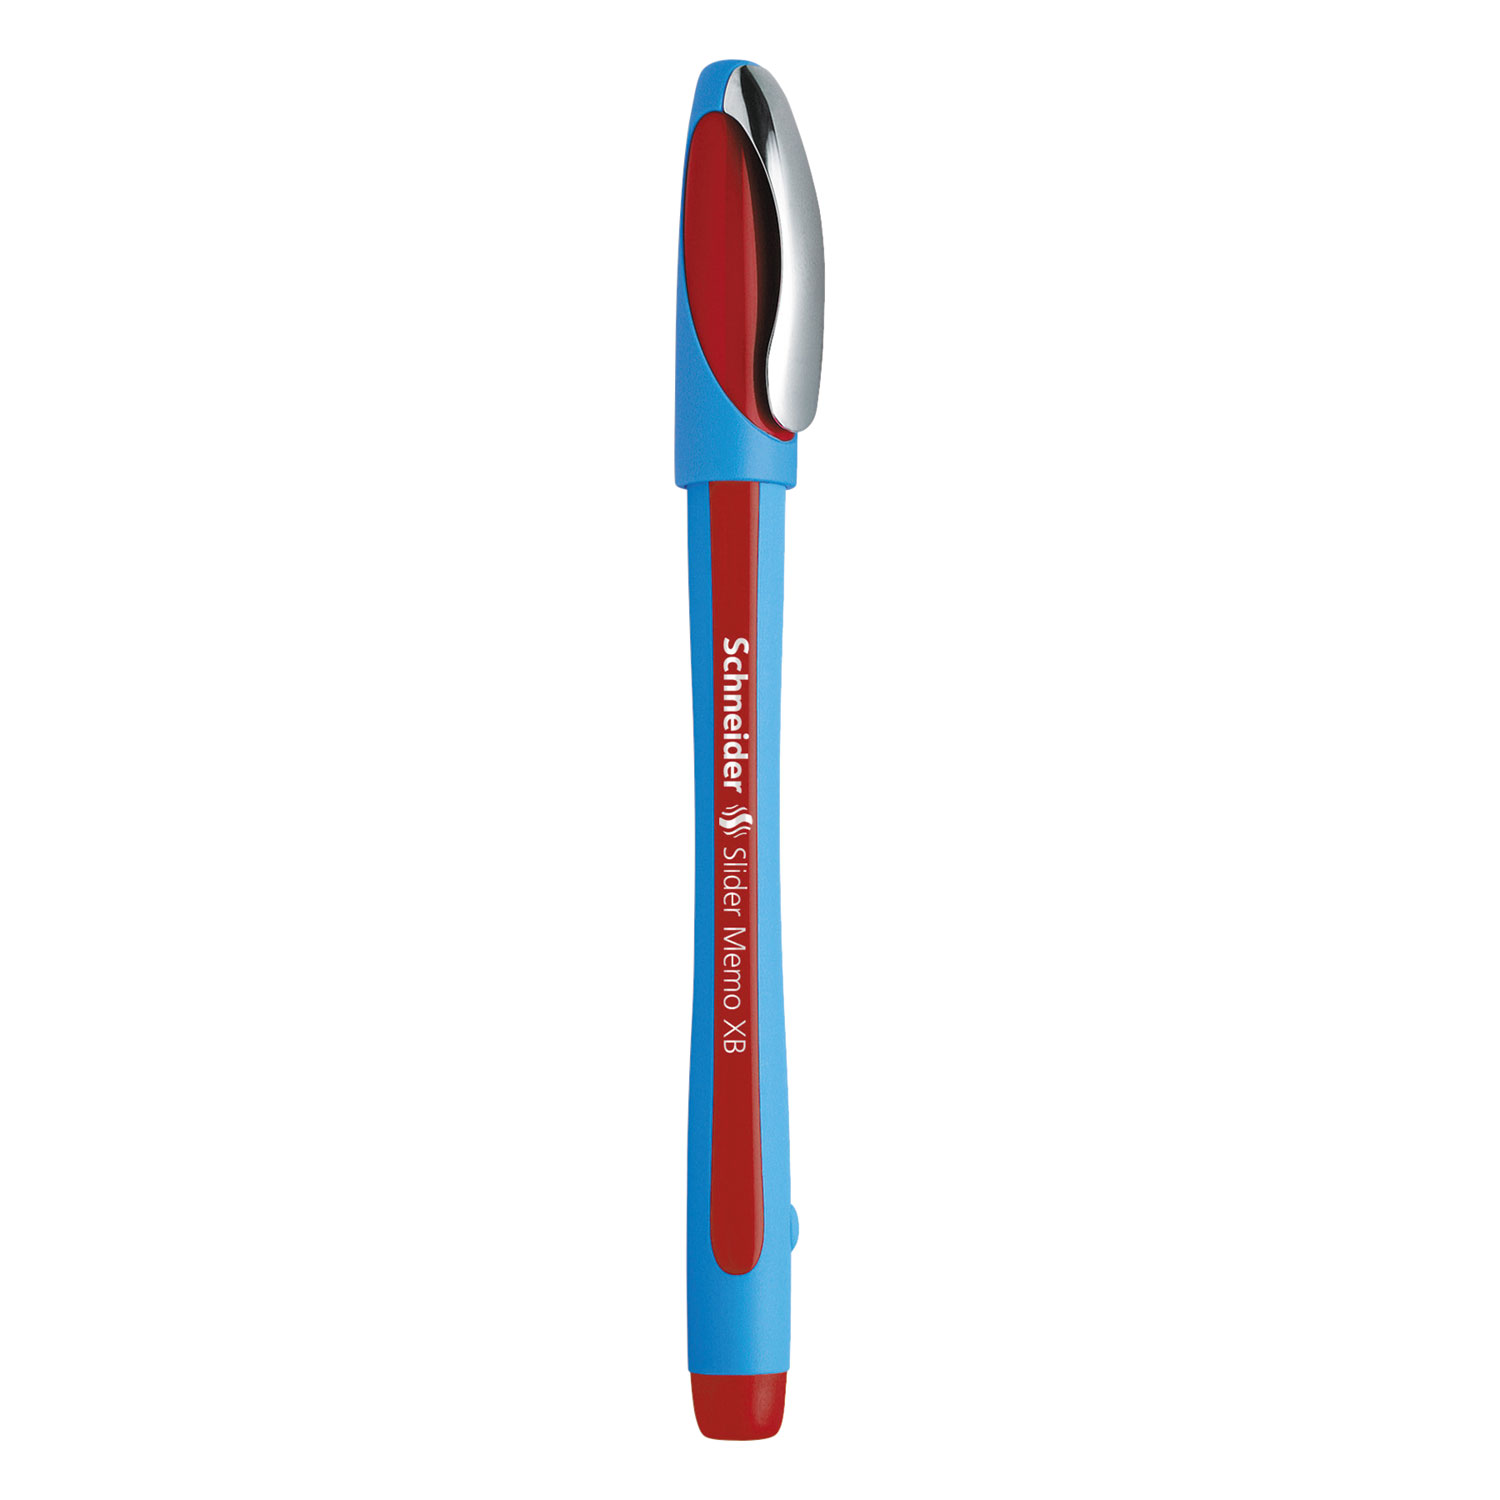  Stride 150202 Schneider Slider Memo XB Stick Ballpoint Pen, 1.4mm, Red Ink, Blue/Red Barrel, 10/Box (STW150202) 